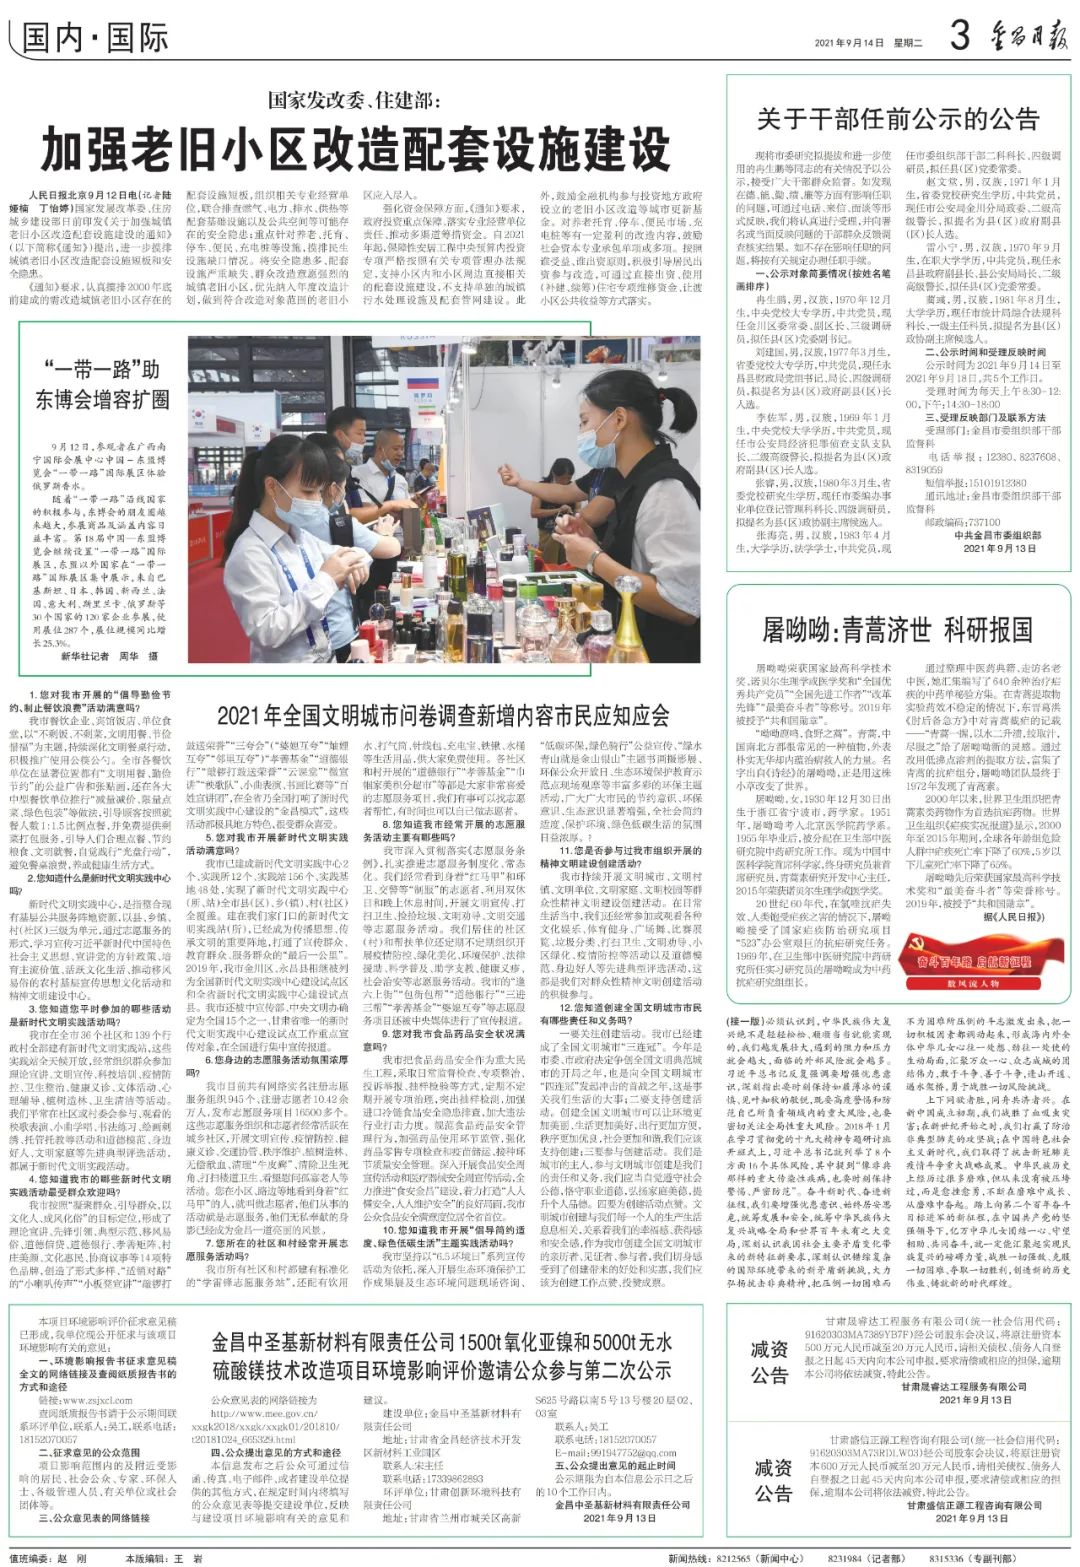 今日报纸_媒体_澎湃新闻-the paper